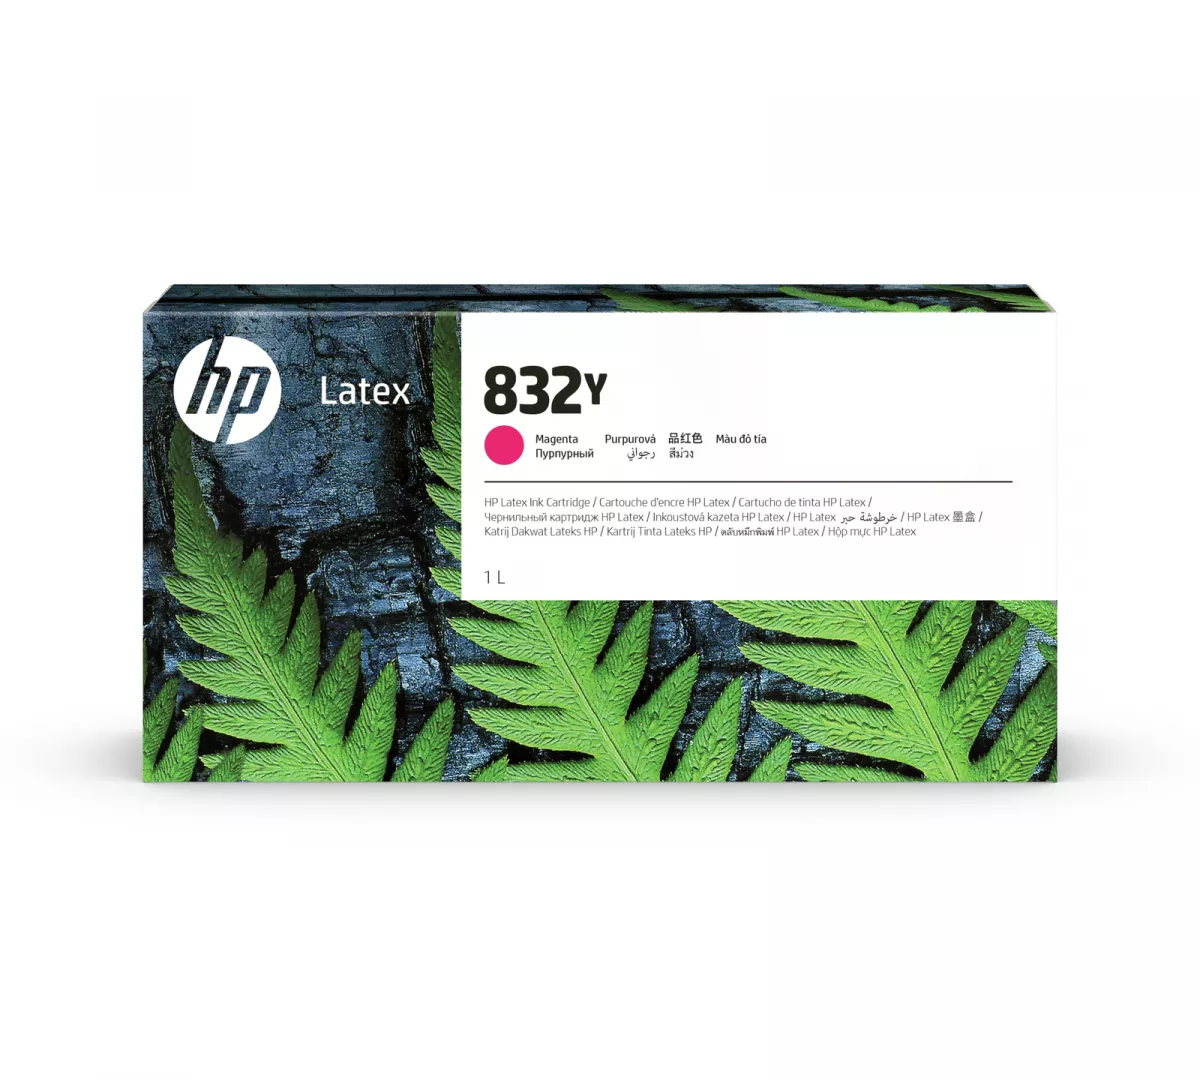 HP 832Y Magenta Latex Ink Cartridge 1 L 1